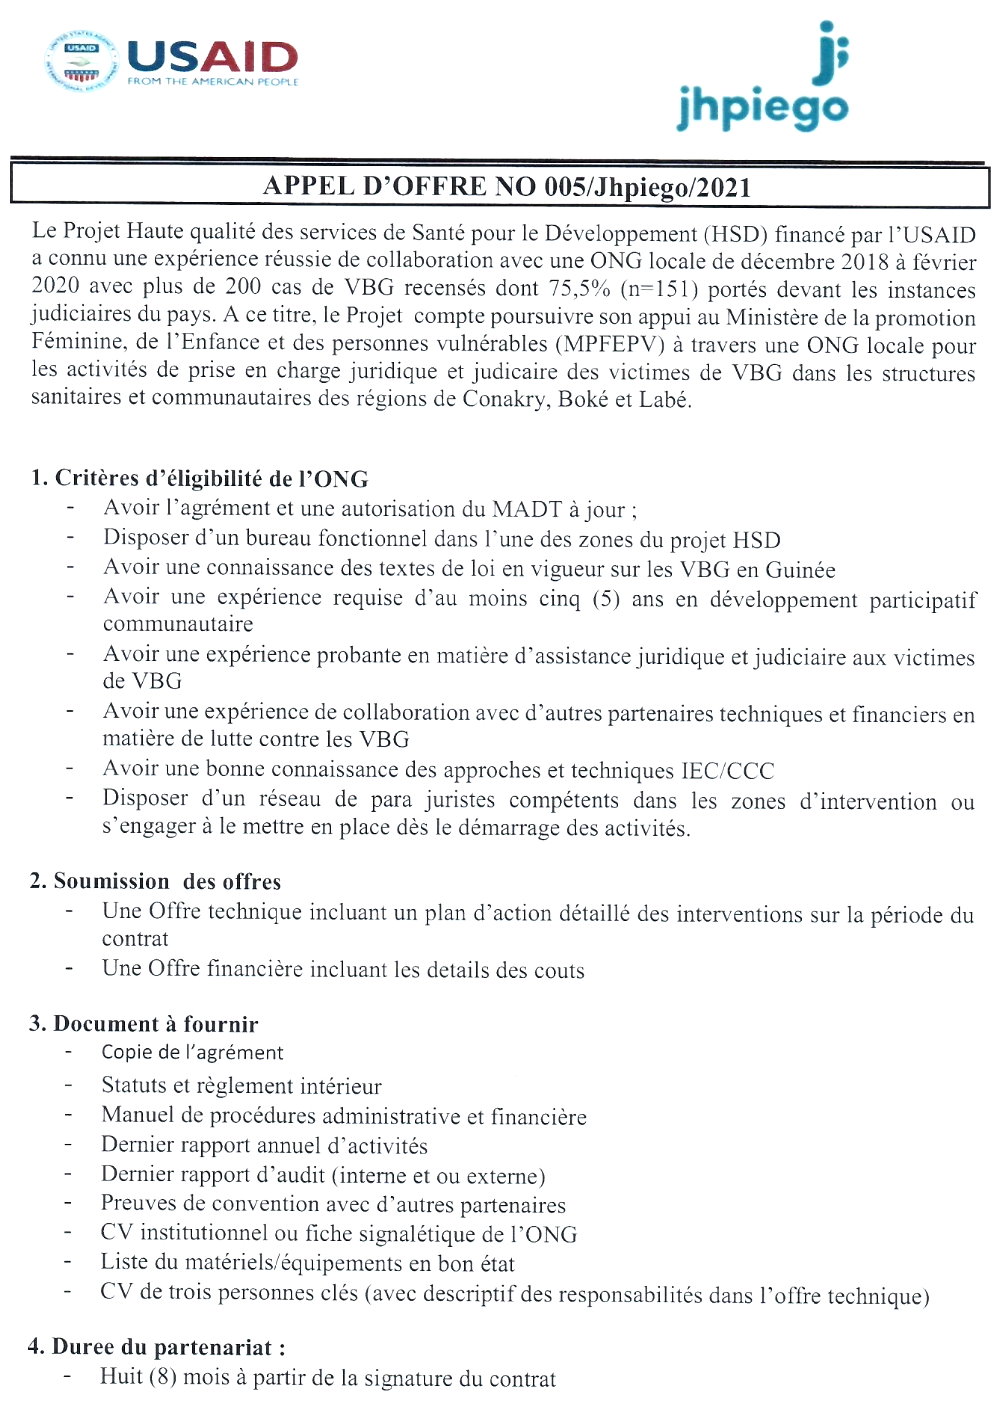 Avis de recrutement d'une ONG locale pour les activités de prise en charge juridique ey judiciaire des victimes de VBG dans les structures sanitaires et communautaires des régions de Conakry, Boké et Labé page 1